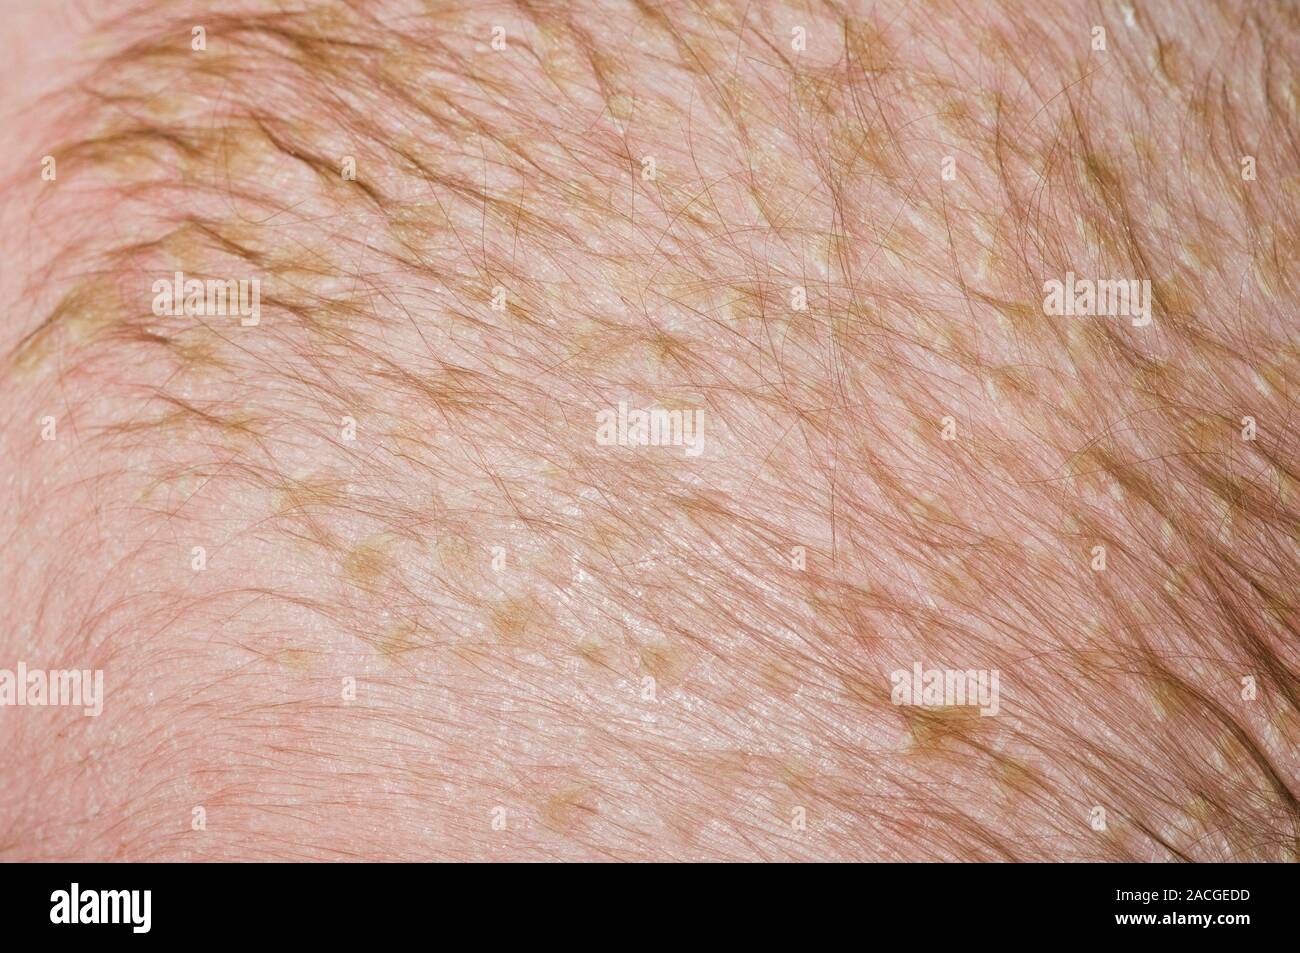 Escamas de piel en el cuero cabelludo del paciente varón de seis meses  debido a la costra láctea (crusta lactea). Estas escamas amarillas en la  cabeza son una forma de seborreica Fotografía